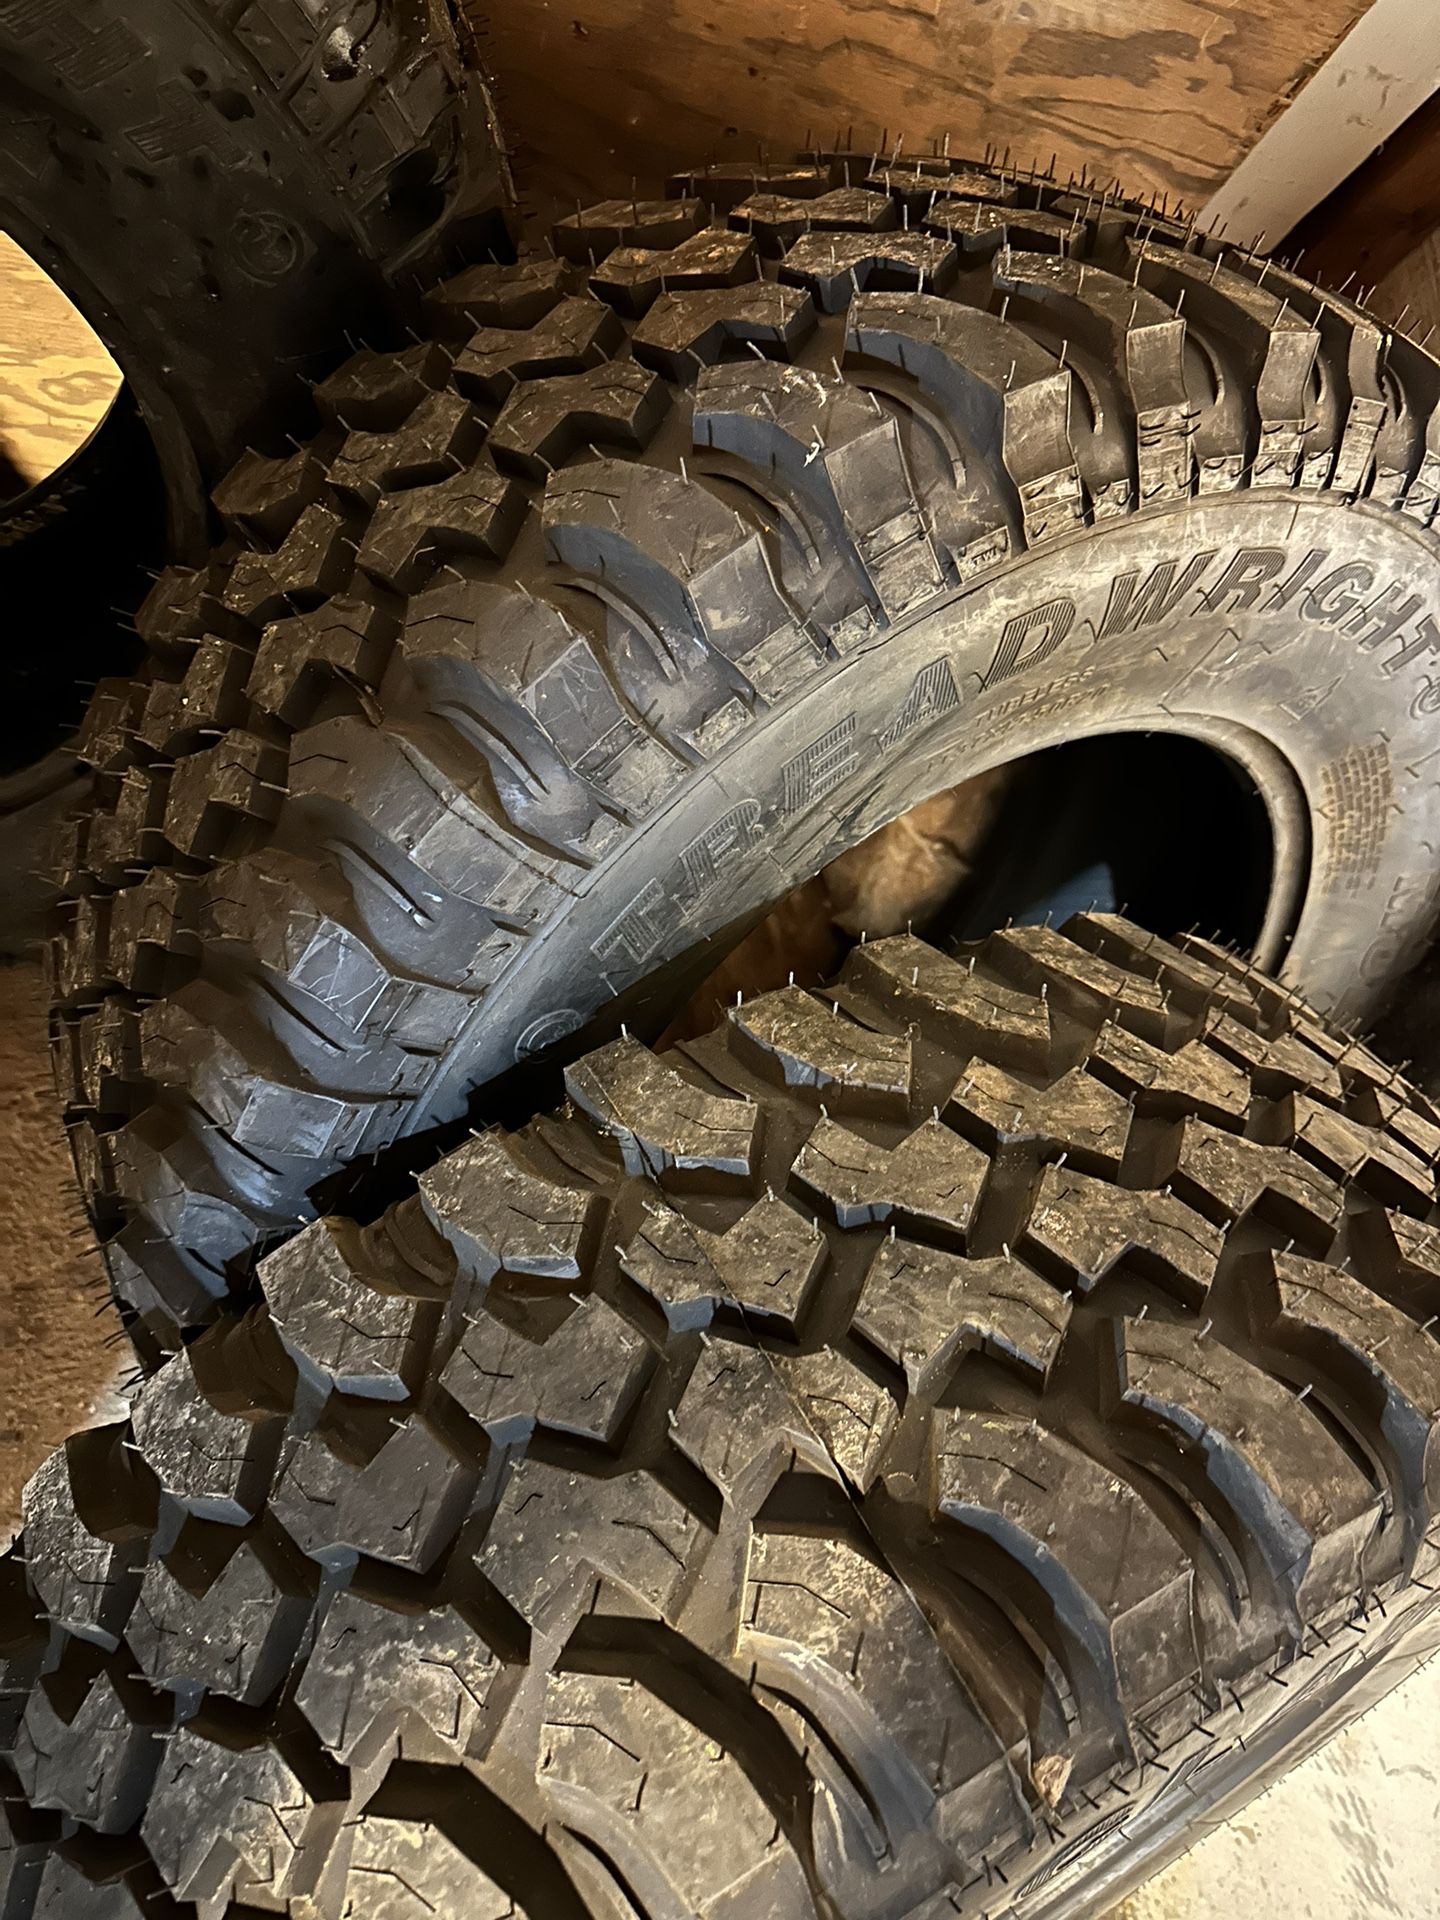 Mud Tires 